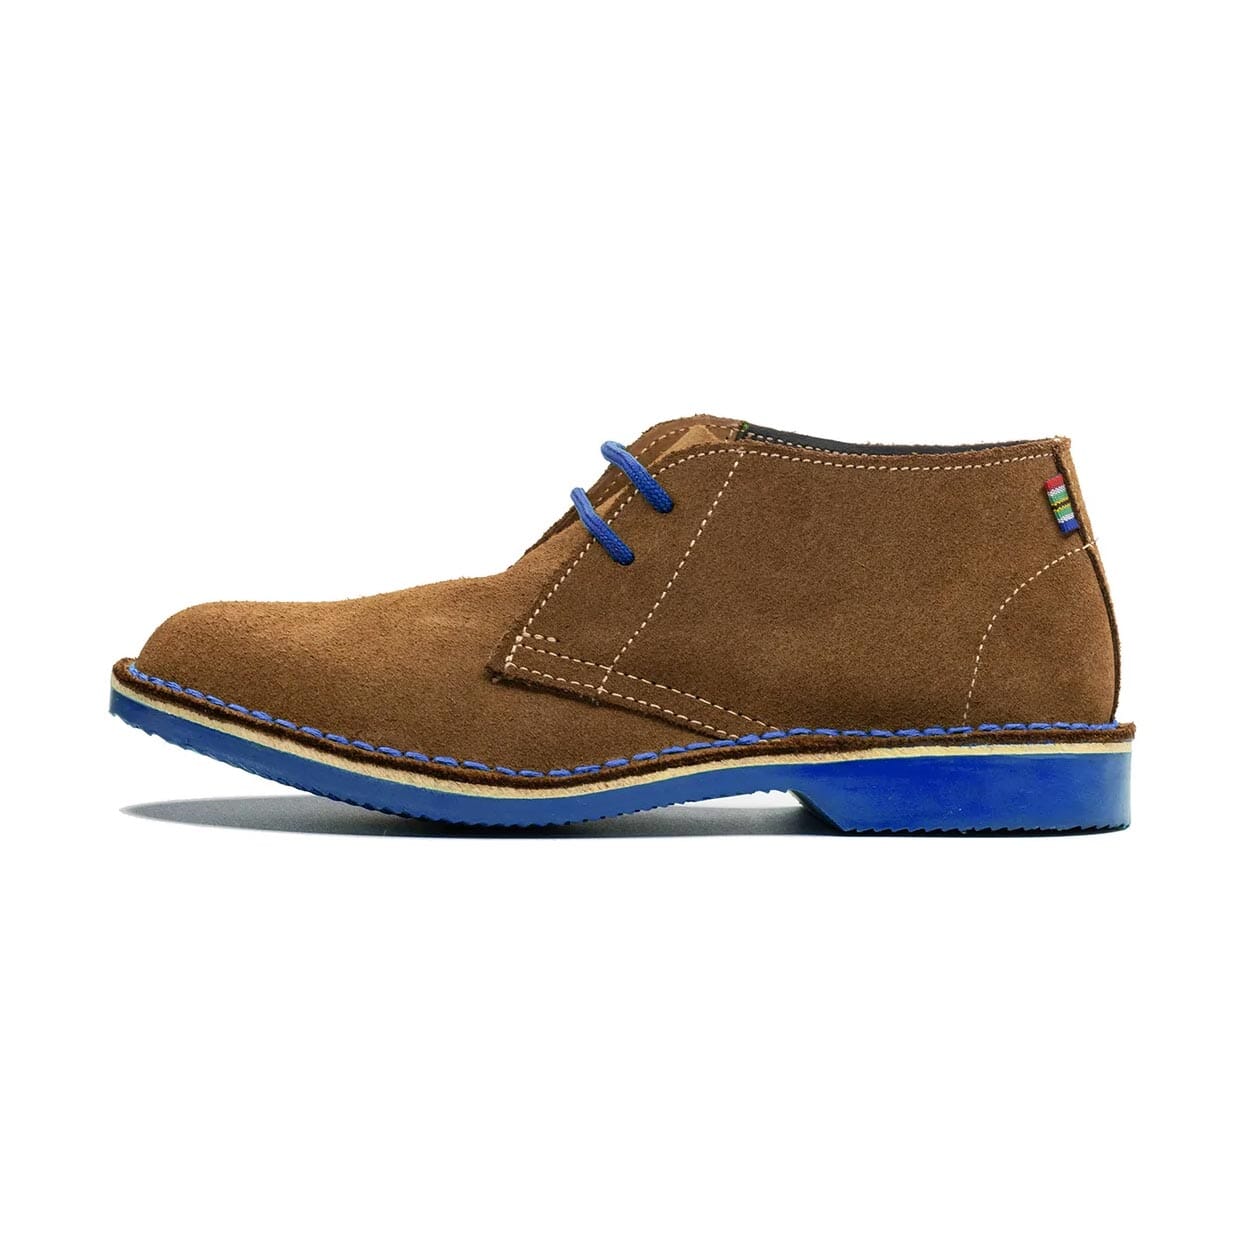 Veldskoen Traditional Heritage Leather Shoe Shoes Veldskoen J-Bay Blue 2 